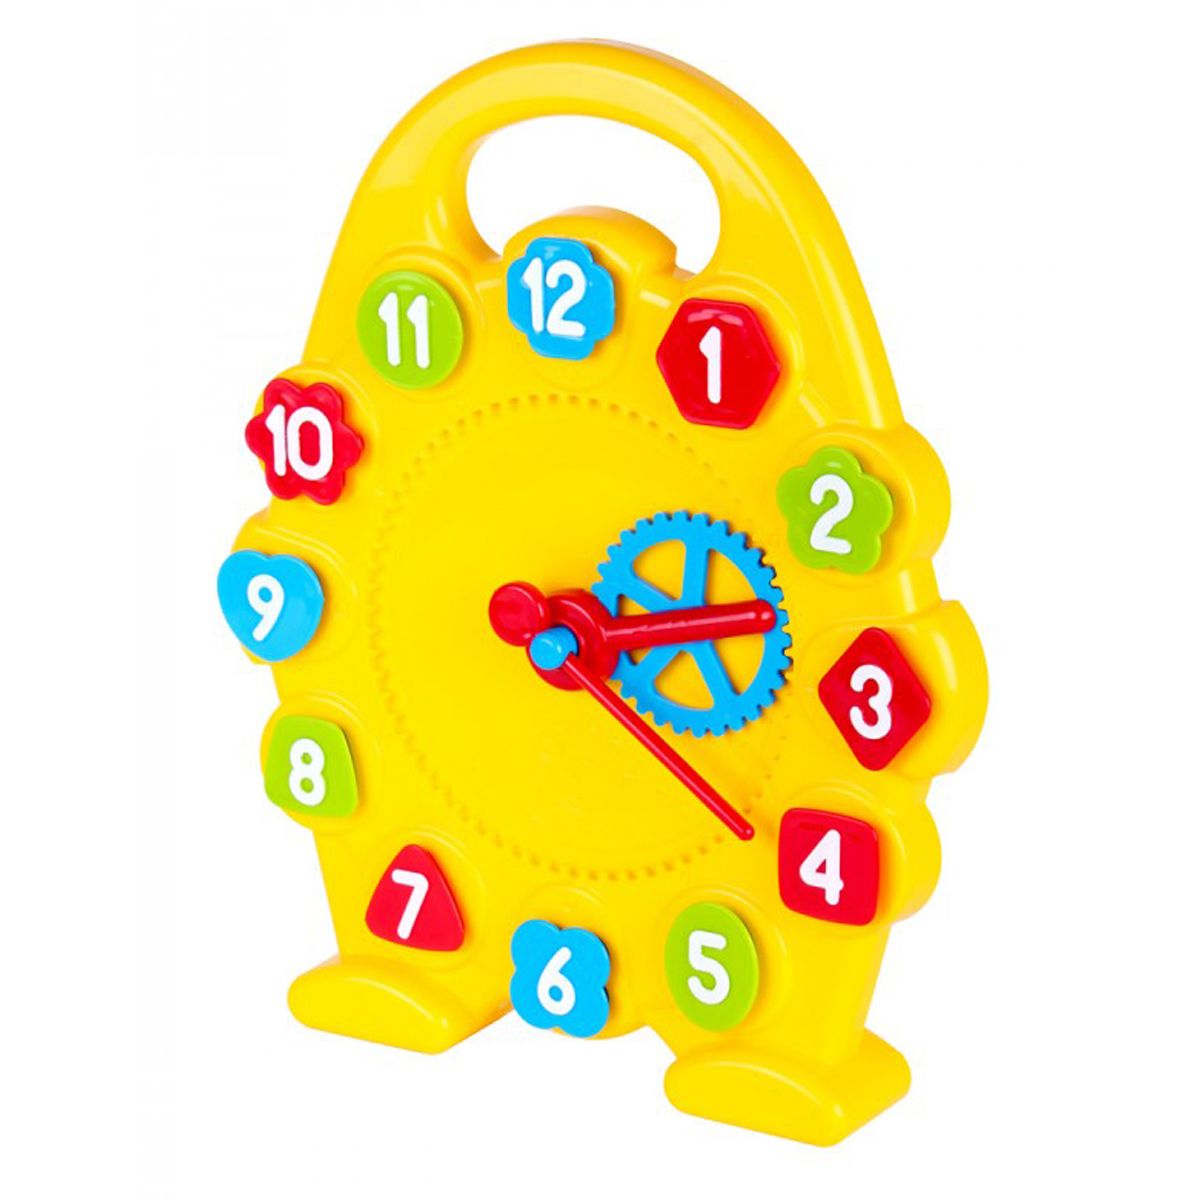 Купить игрушку часы. Сортер ТЕХНОК часы (3046). Игрушечные часы. Часы развивающие для детей. Игрушечные часы для малышей.